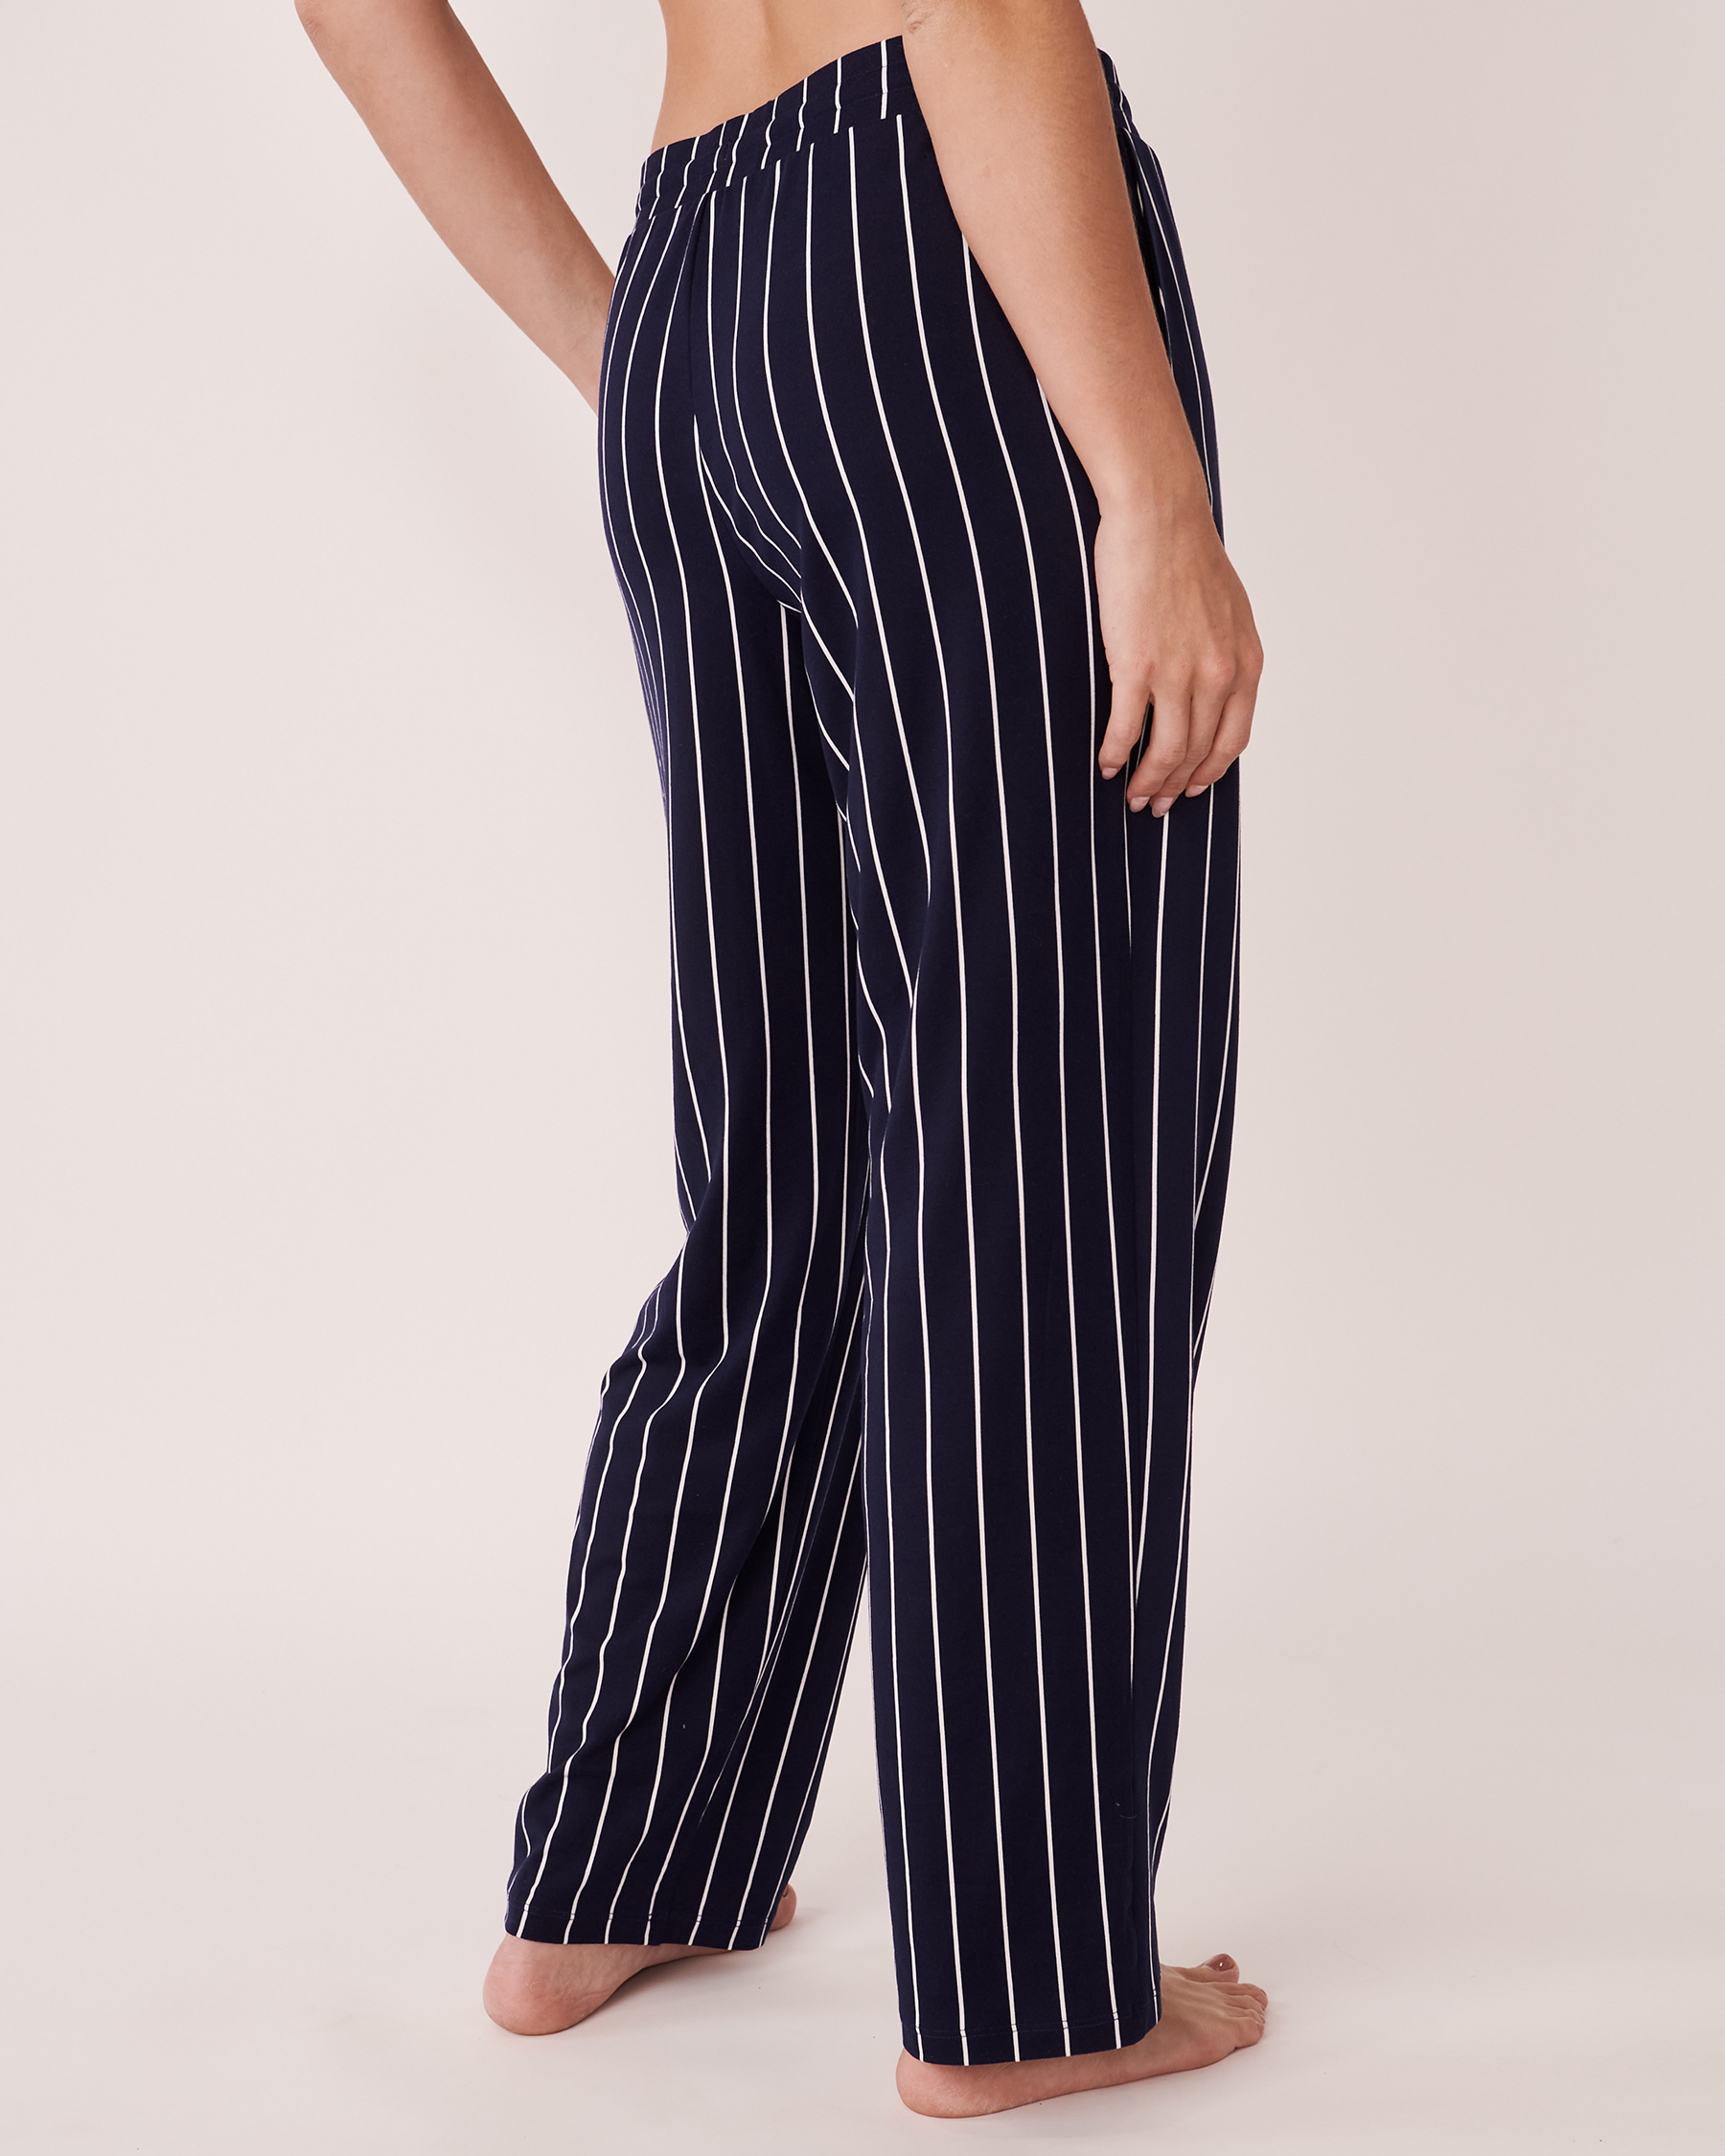 LA VIE EN ROSE Super Soft Pyjama Pants Maritime blue stripes 40200274 - View3